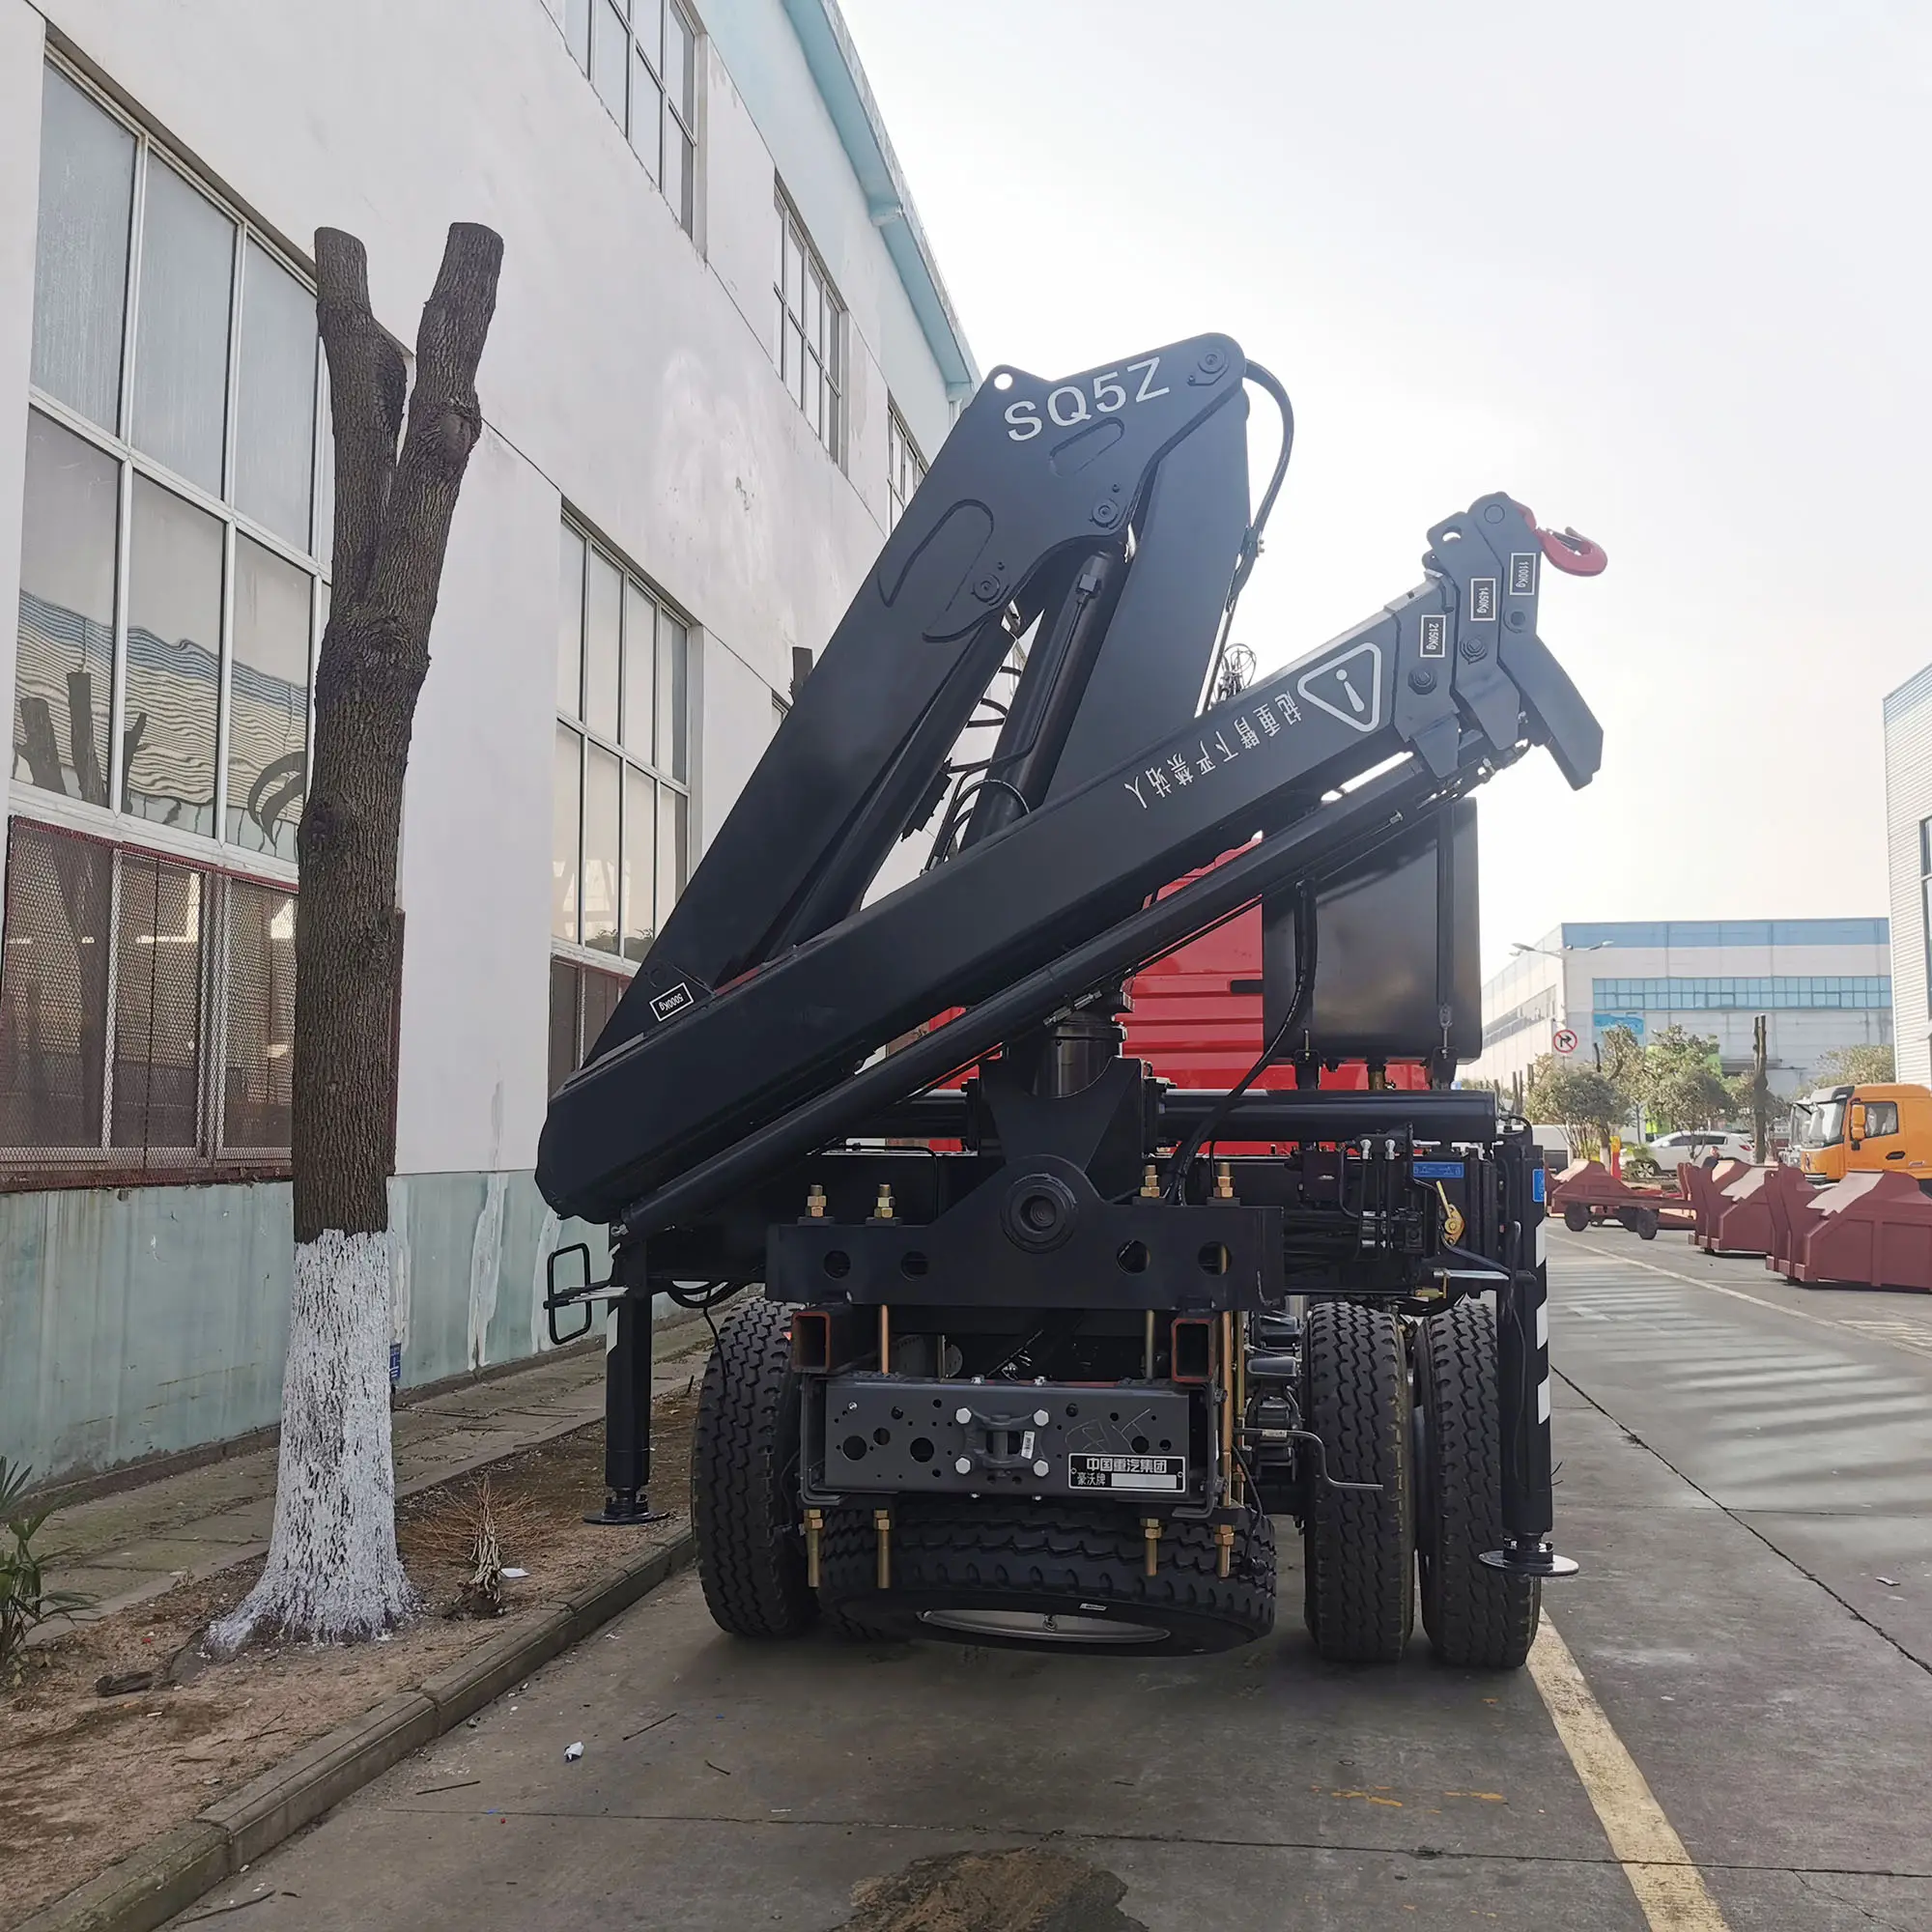 ZORY hydraulique mobile 5 tonnes manipulateur flèche grue montée sur camion grues à flèche pliantes à vendre